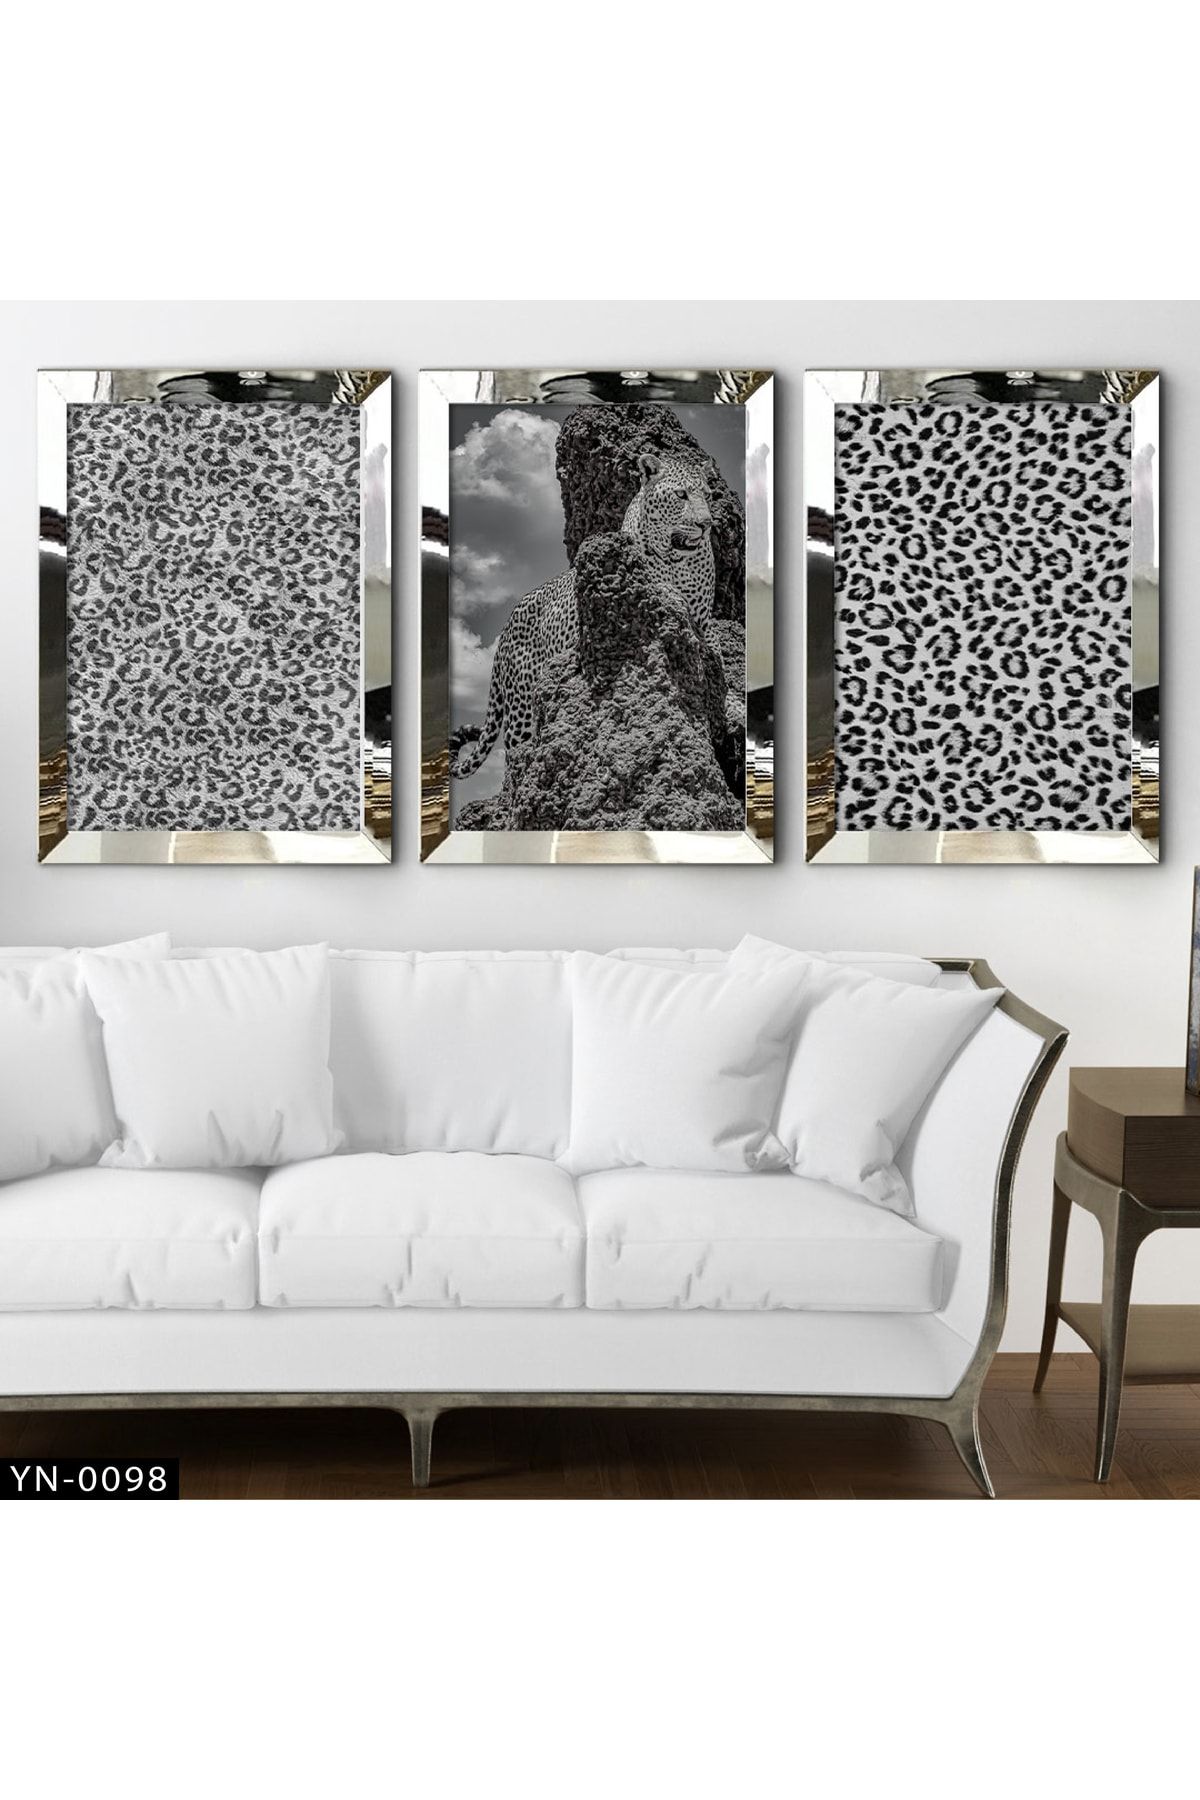 hanhomeart Siyah Beyaz Leopar Desenli - Gümüş Ayna Çerçeveli Tablo 3'lü Set-hyn-0098